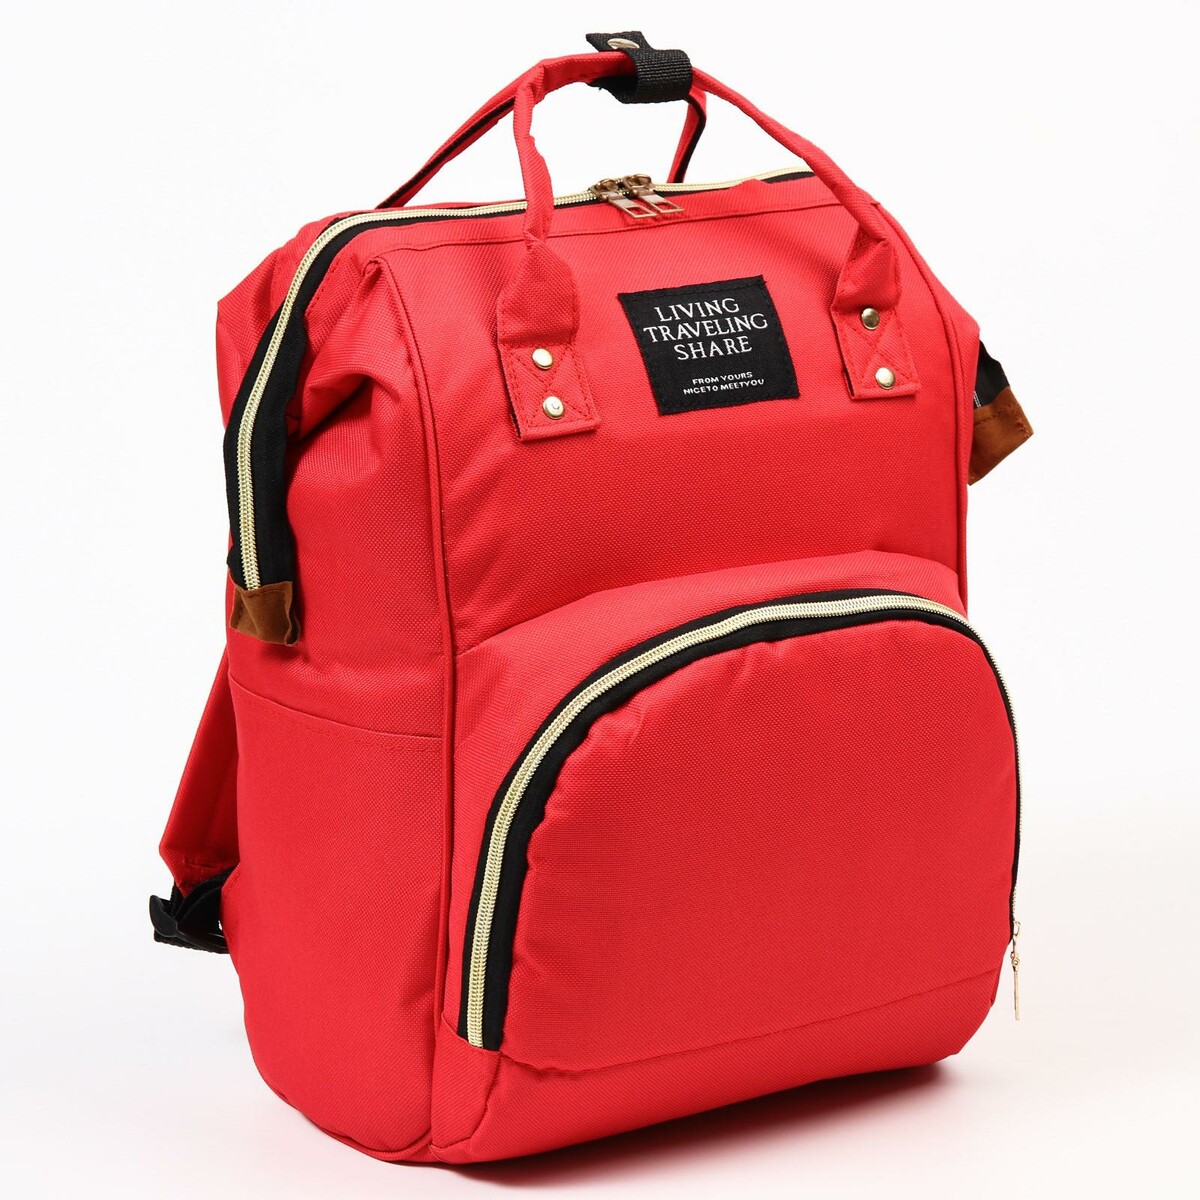 Рюкзак женский с термокарманом, термосумка - портфель, цвет красный рюкзак kingkong i 30 wb 9064 черн средний фоторюкзак